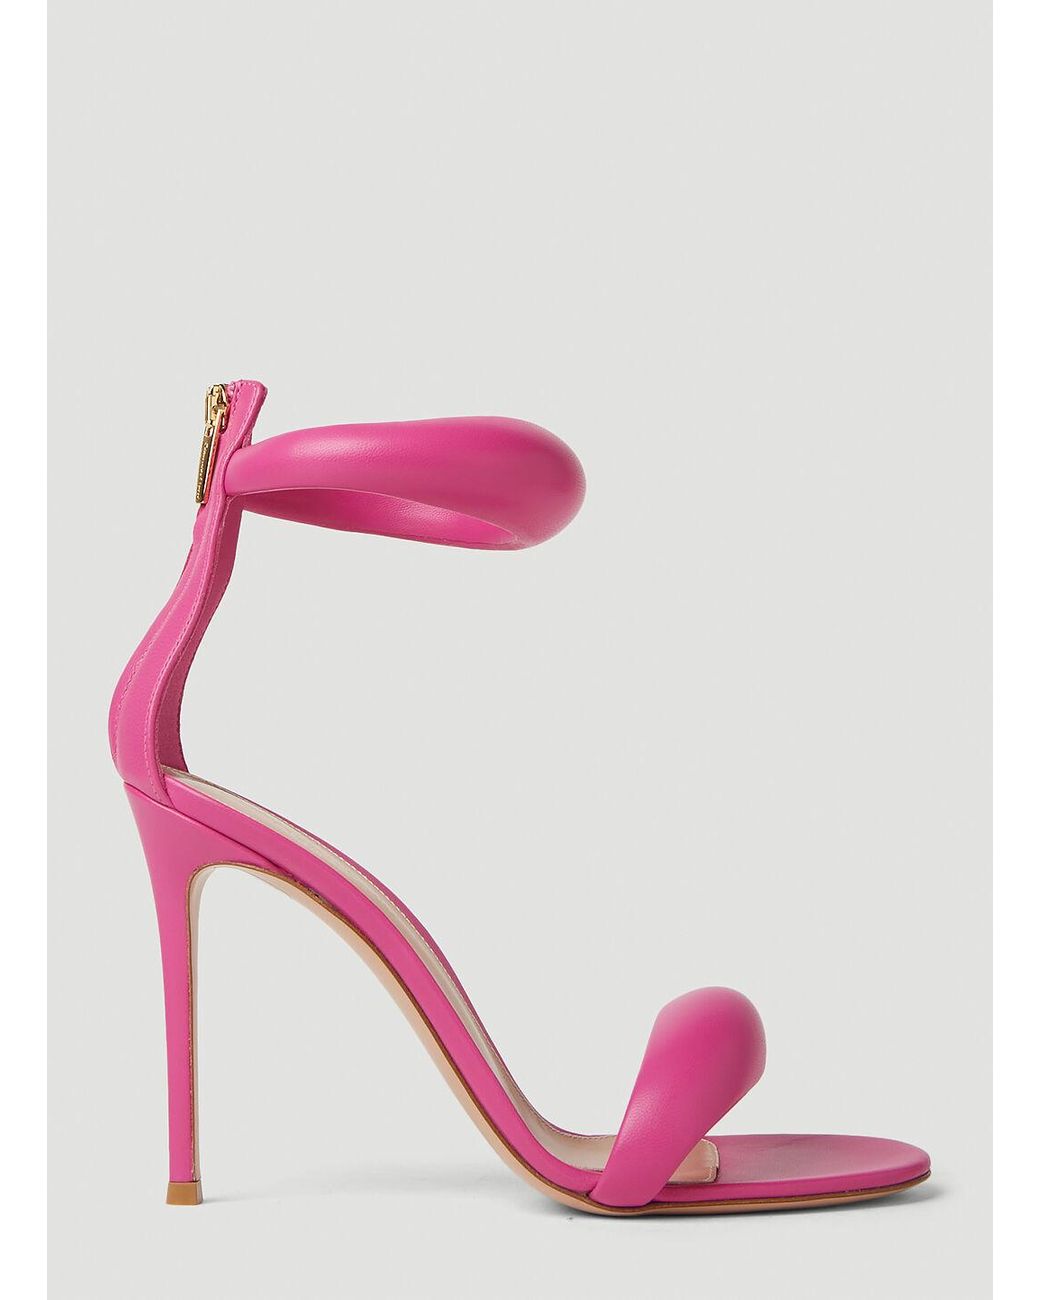 Gianvito Rossi Bijoux High Heel Sandals in Pink | Lyst Canada